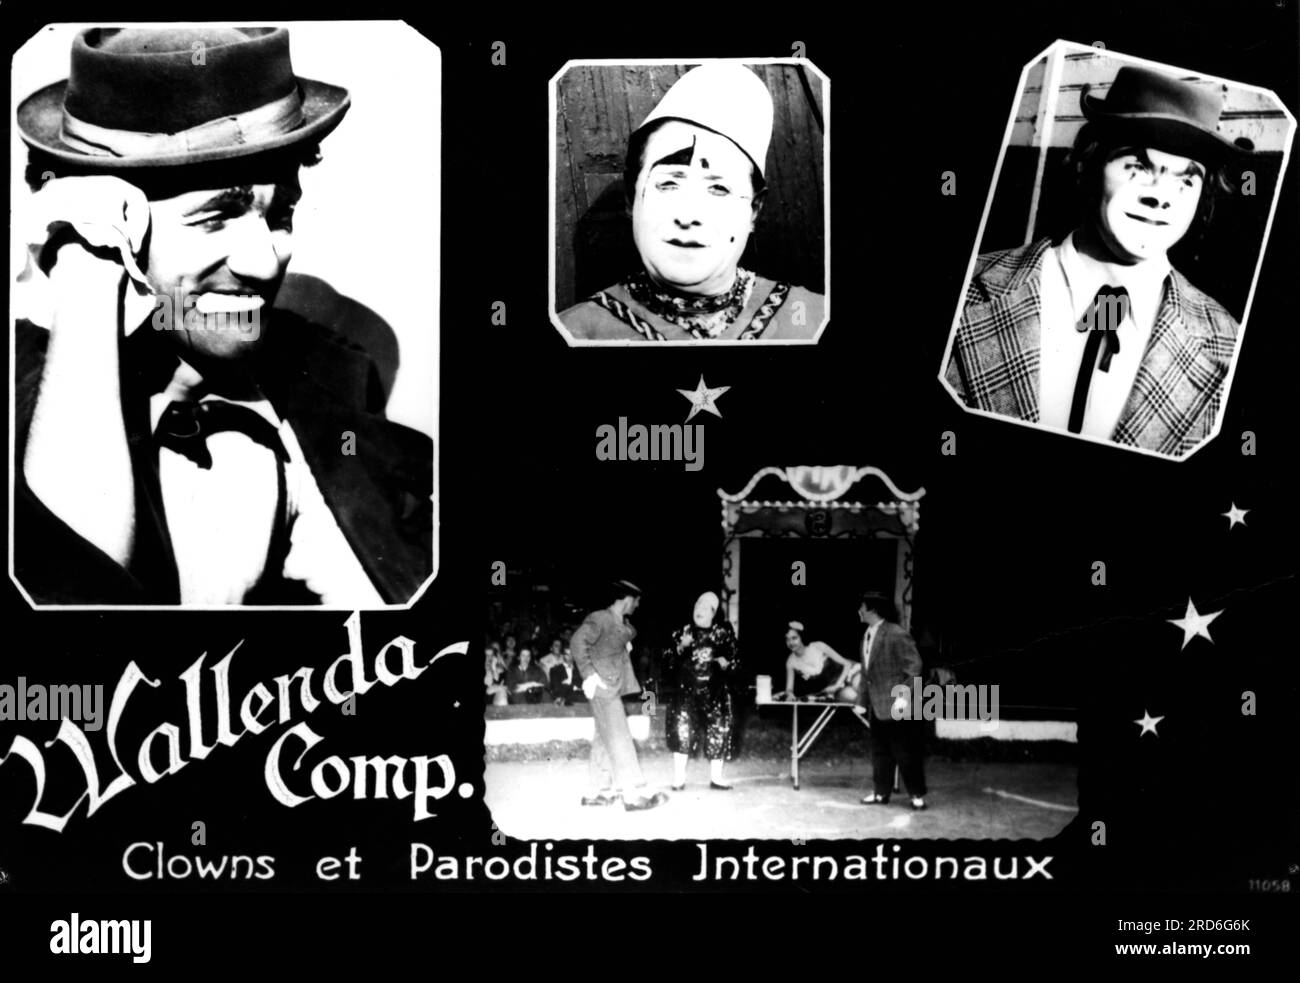 Circus, clown, Wallenda Comp., années 1930, INFORMATION-AUTORISATION-DROITS-SUPPLÉMENTAIRES-NON-DISPONIBLE Banque D'Images